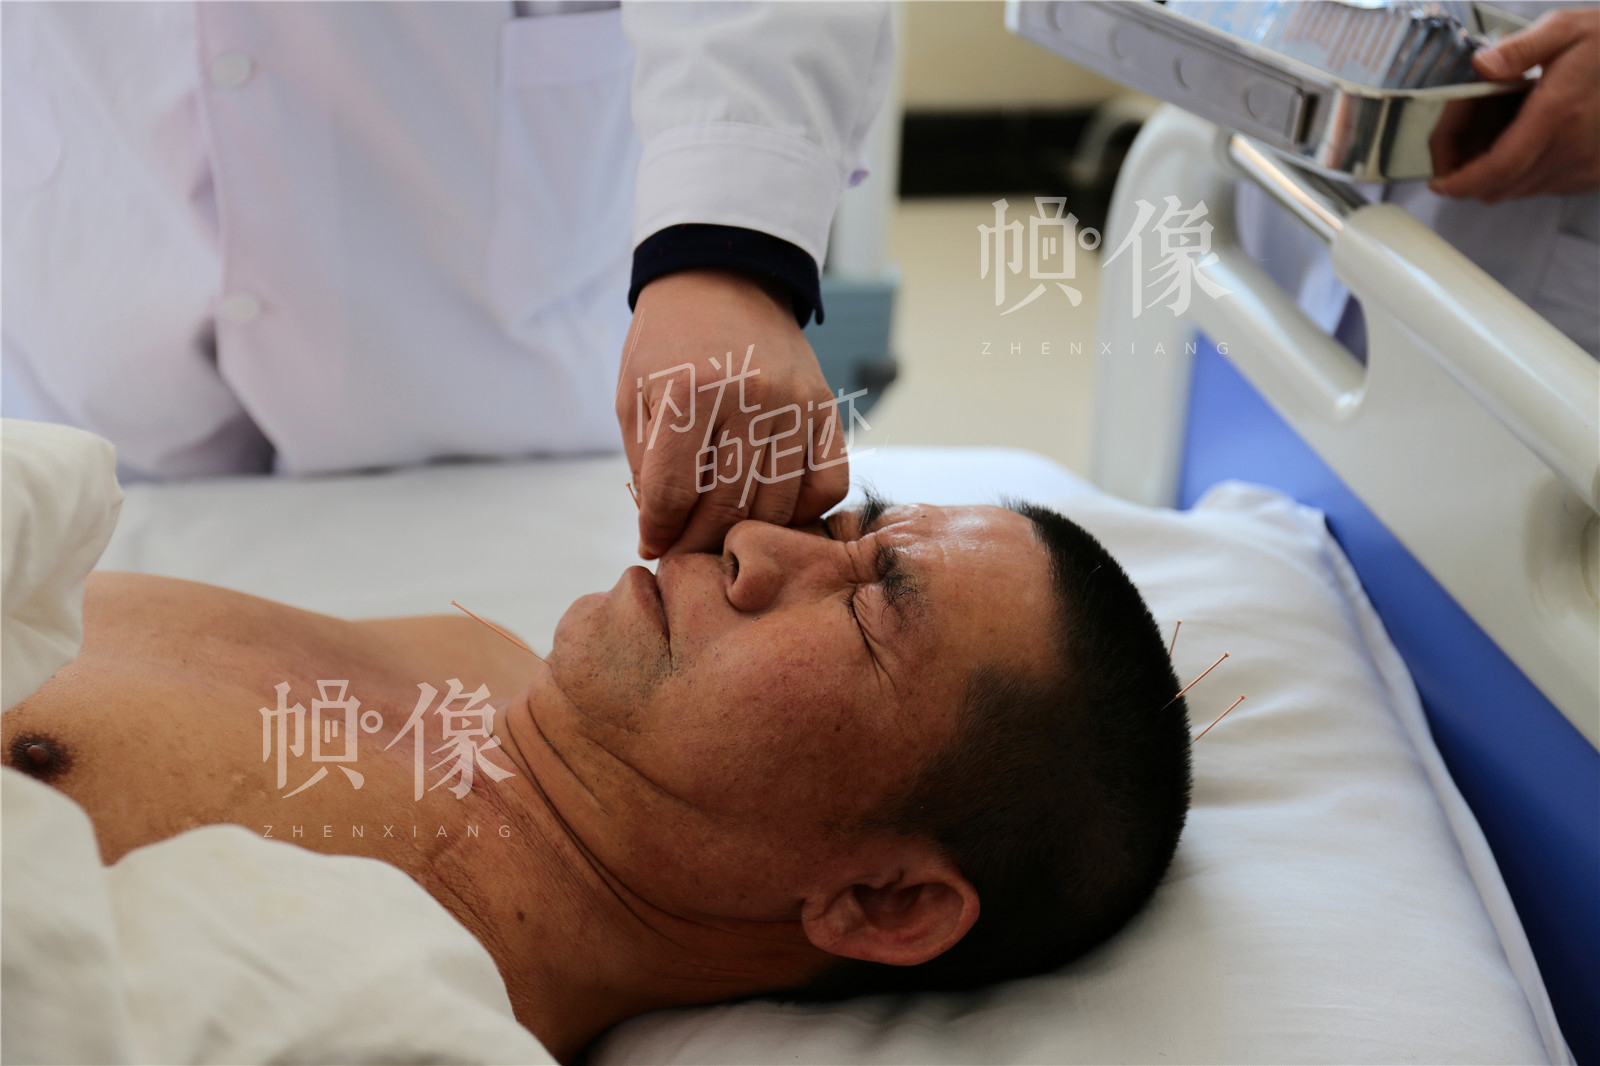 “医养结合”是张坊镇金海养老中心的特色内容，王金海每天上午例行查房后都会为患者做针灸治疗。中国网记者 黄富友 摄